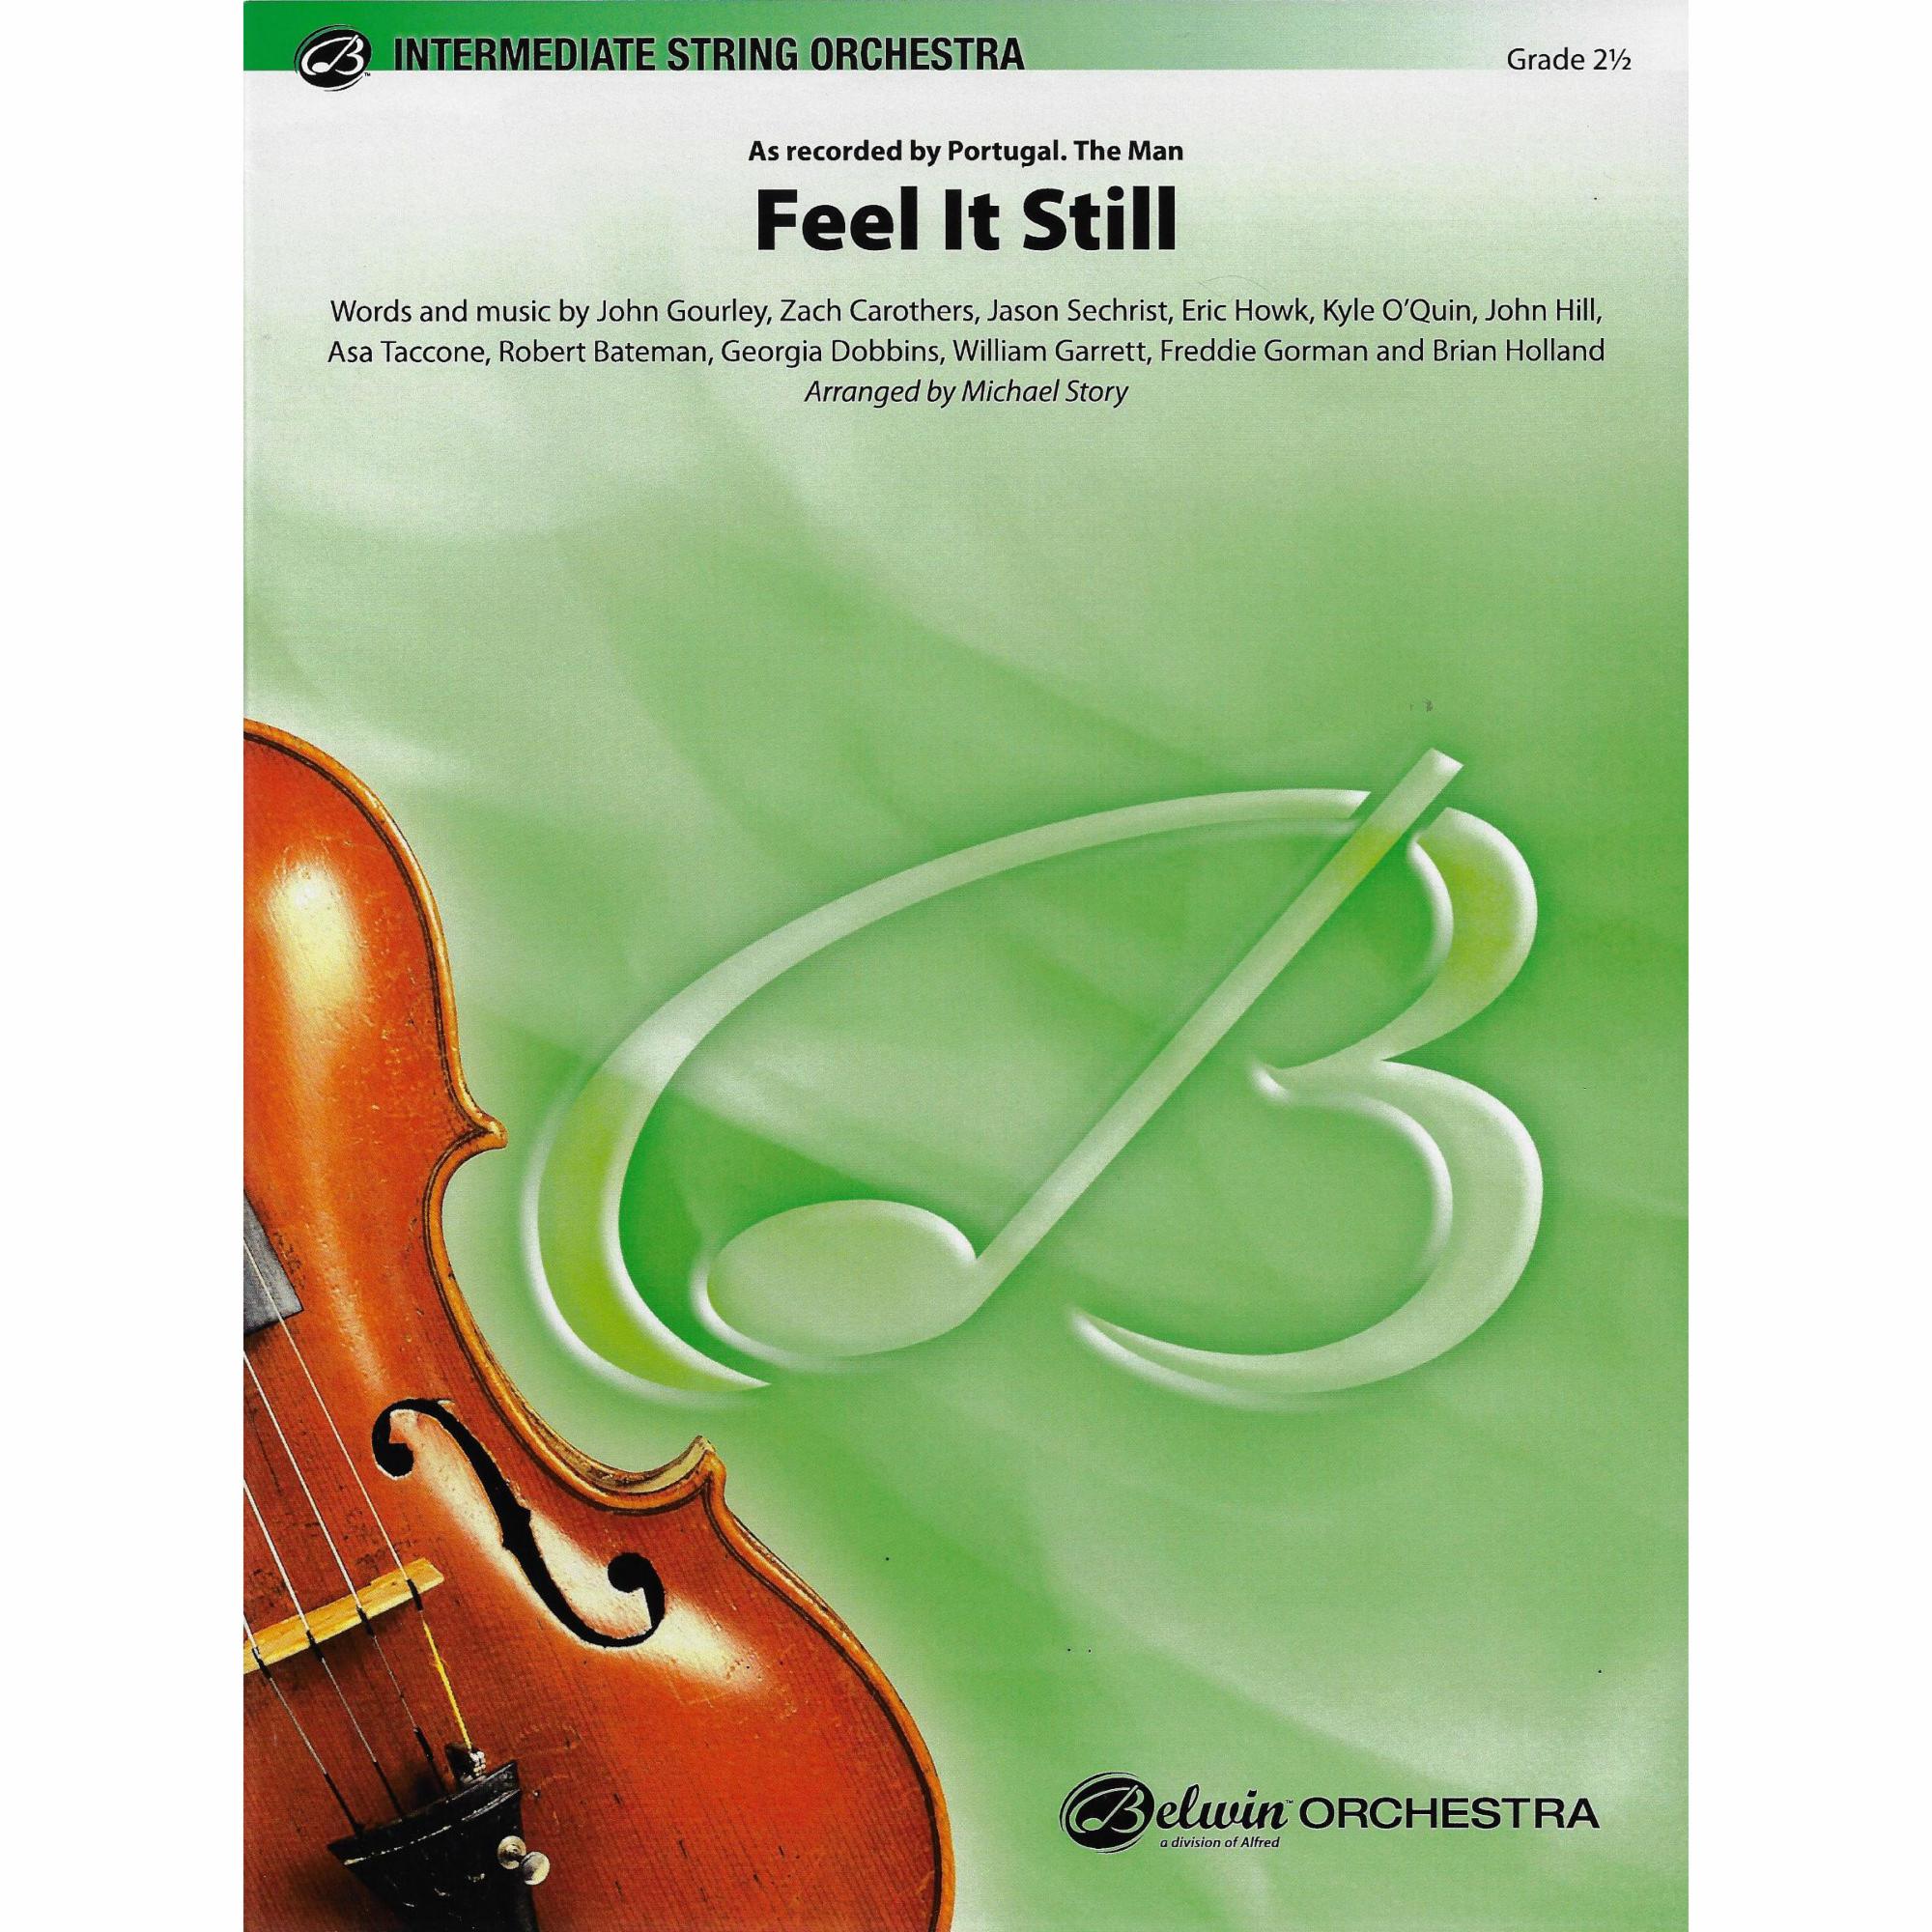 Feel It Still from String Orchestra